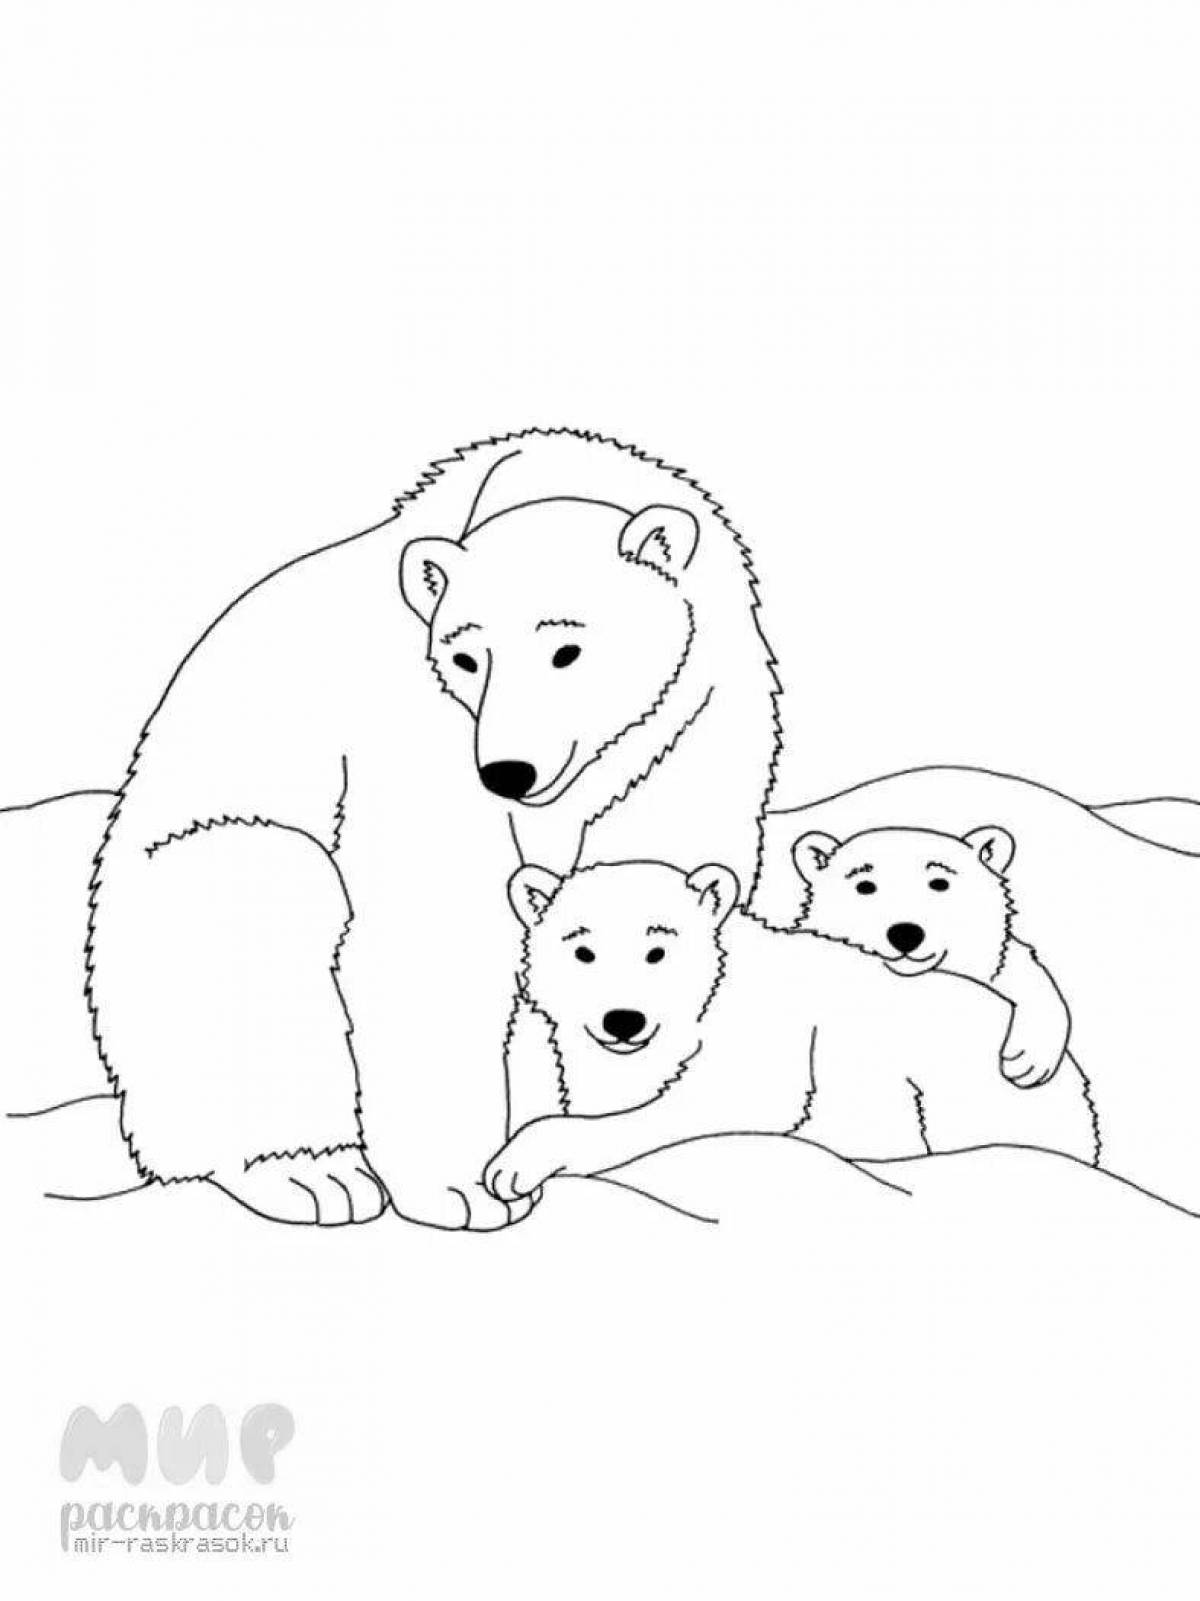 Забавная раскраска белого медведя для дошкольников